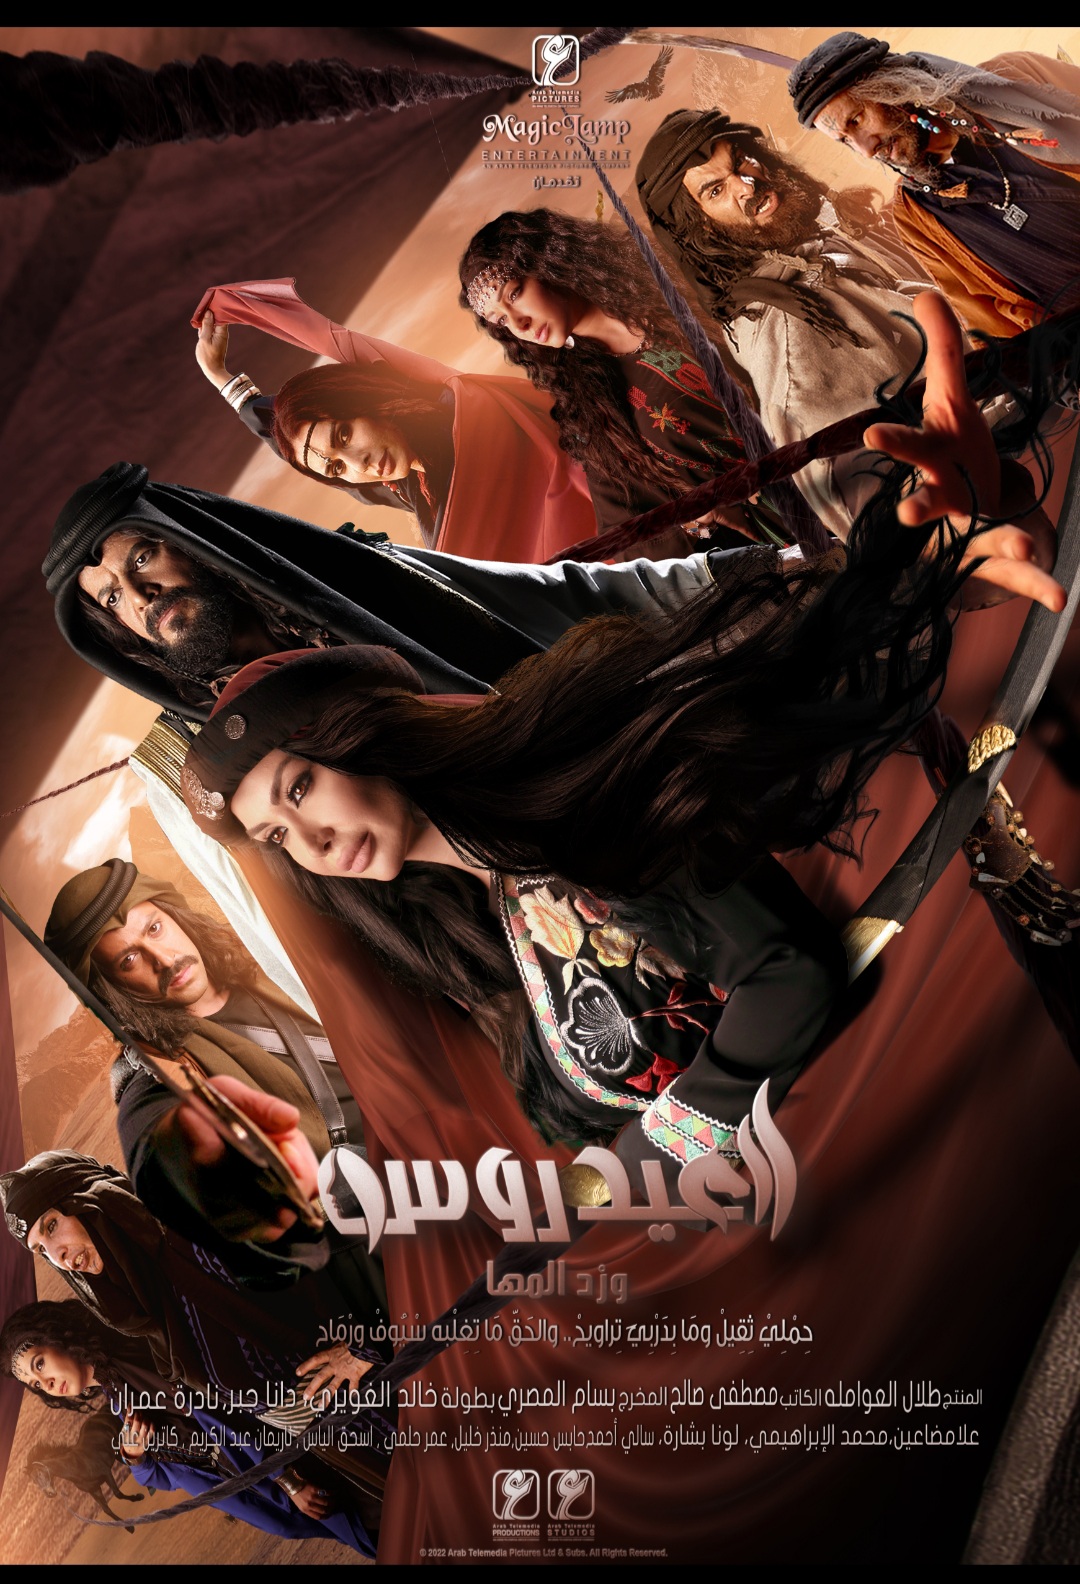 مسلسل 《العيدروس》 دراما بدوية متفردة تنتجها مجموعة المركز العربي الإعلامية